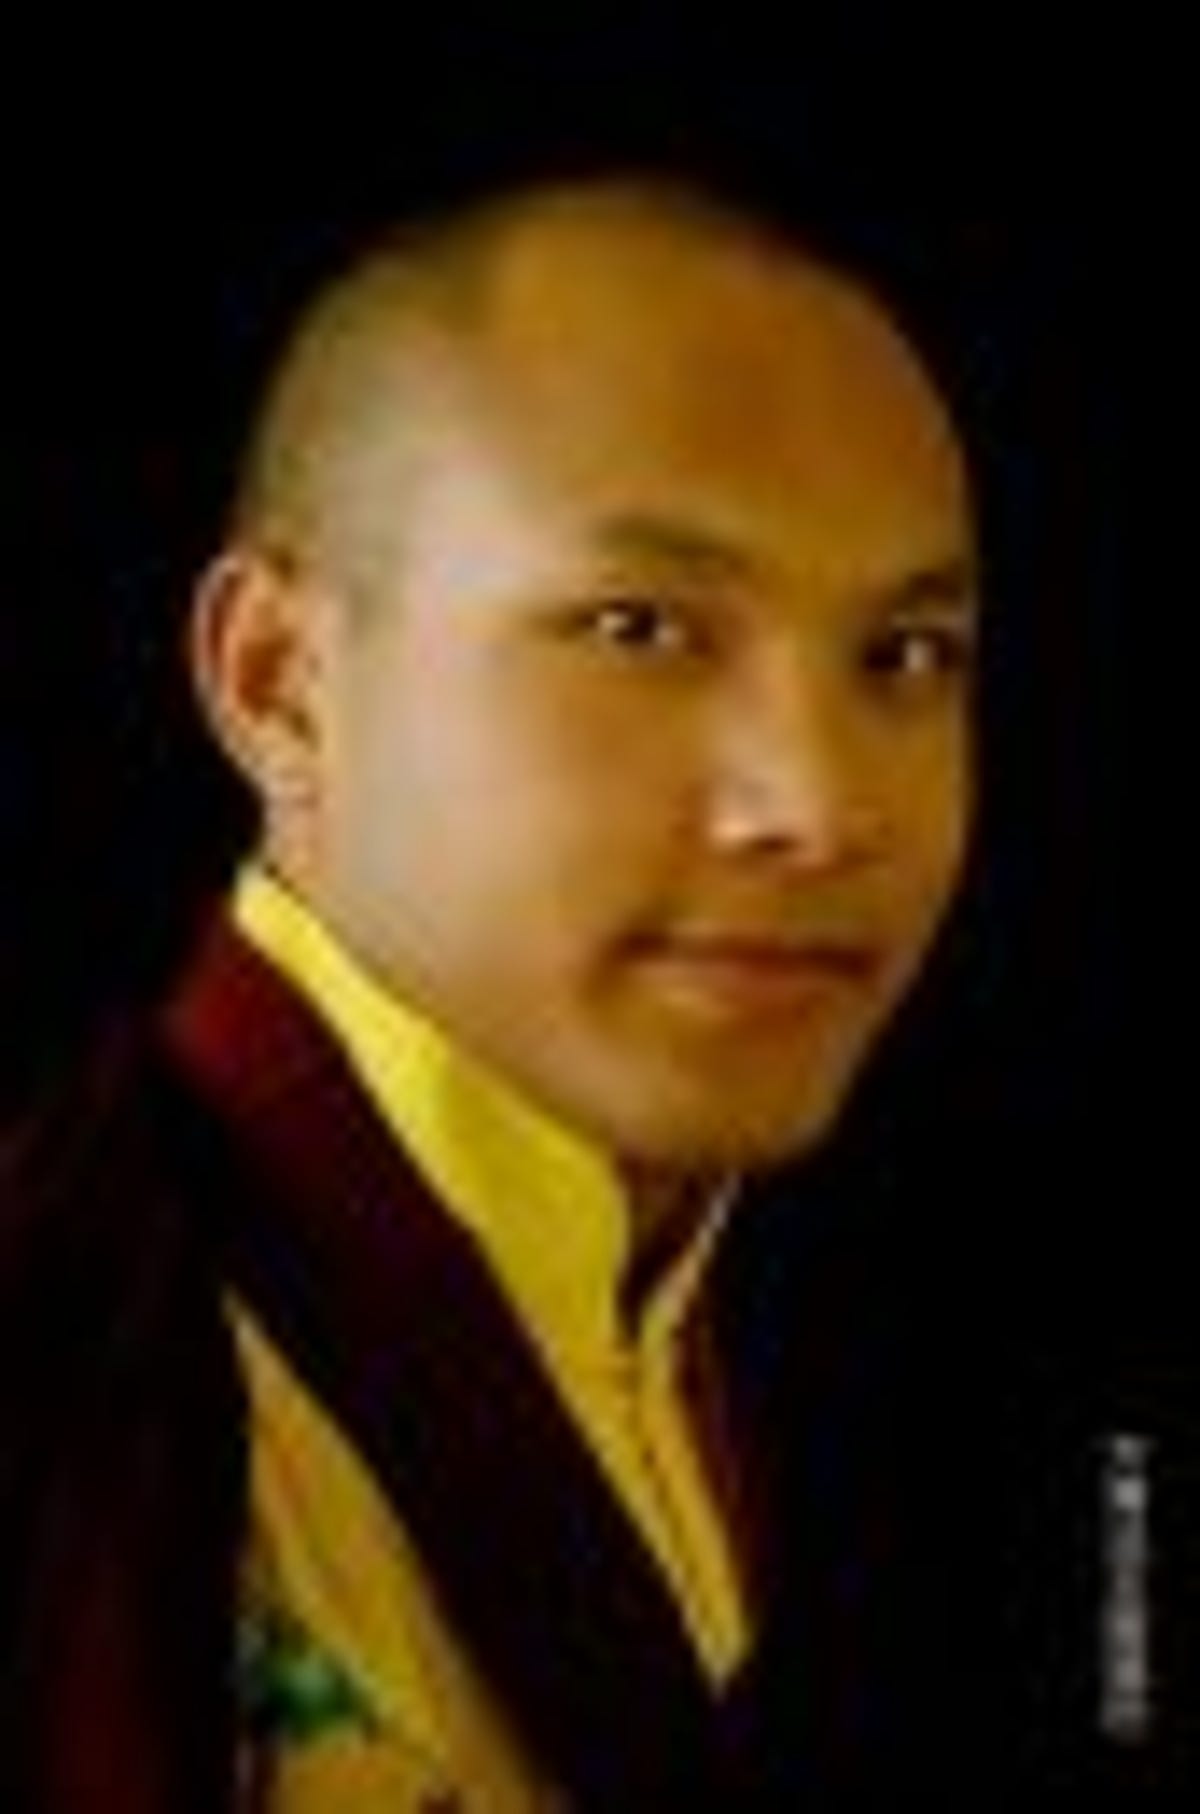 17th Karmapa, Ogyen Trinley Dorje